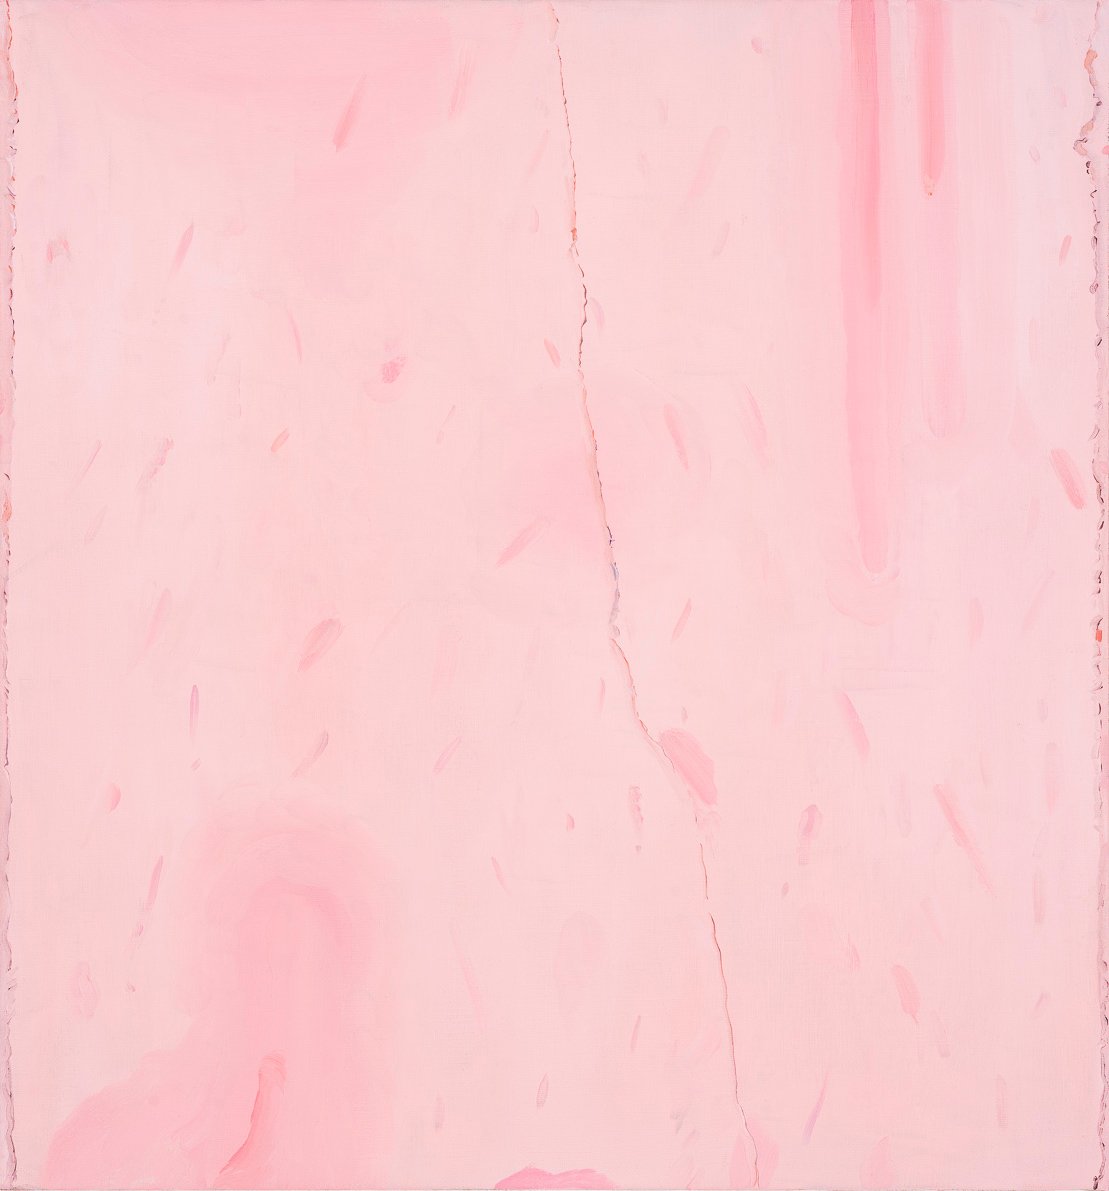 Michele Tocca, Dripping, 2018, olio su tela, 80 x 75 cm. Photo Sebastiano Luciano 2018